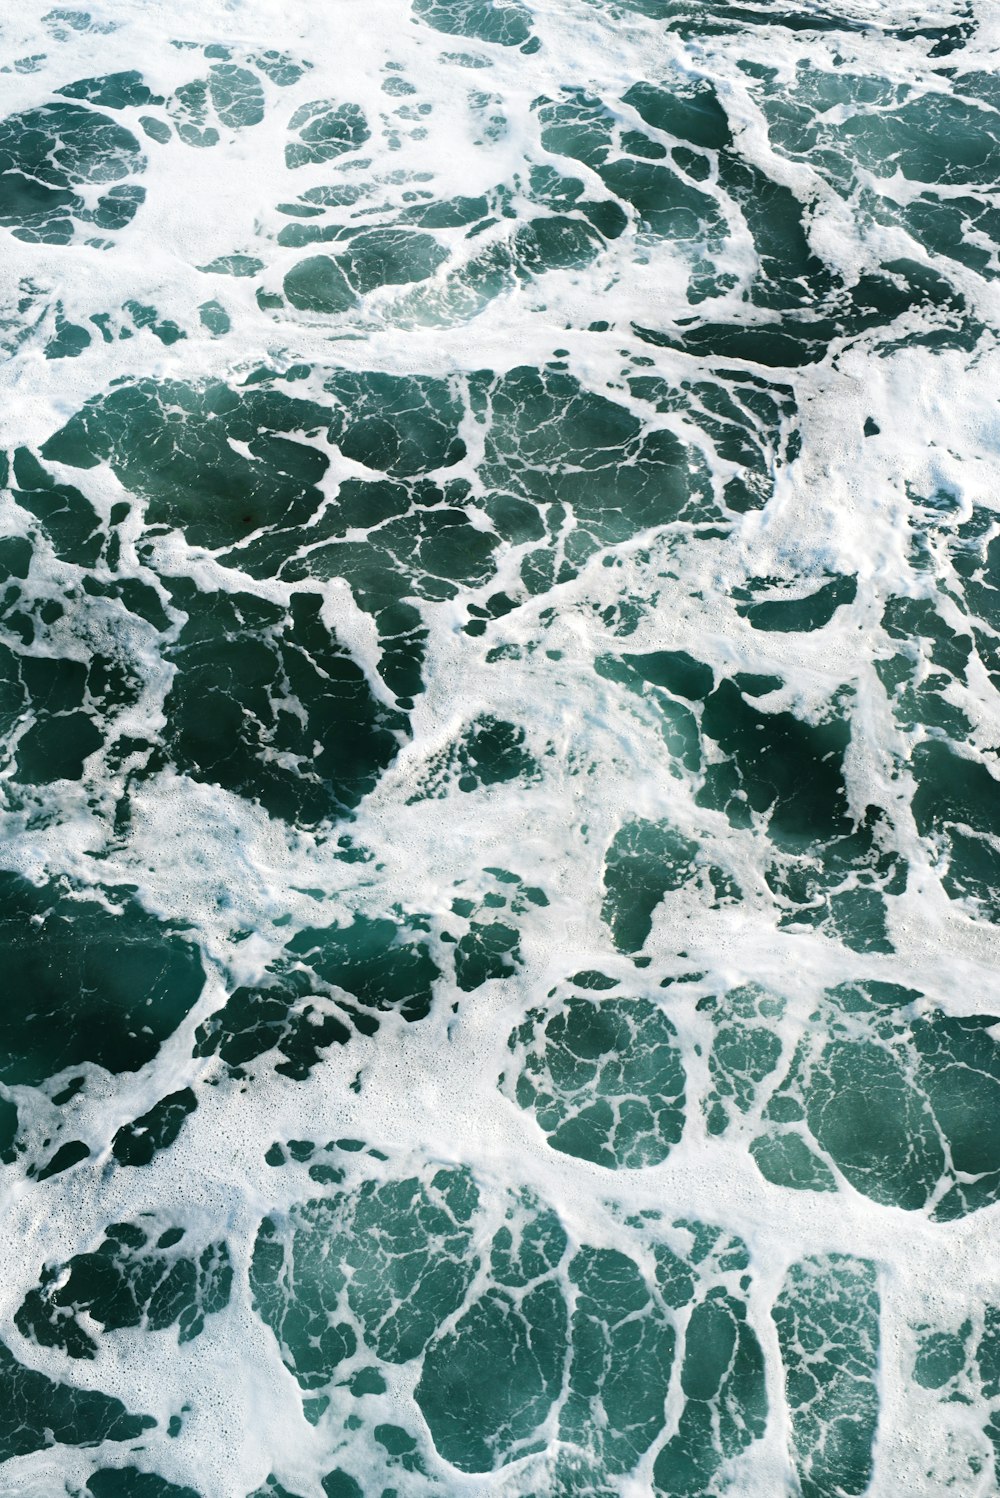 foto de ondas do mar de teal